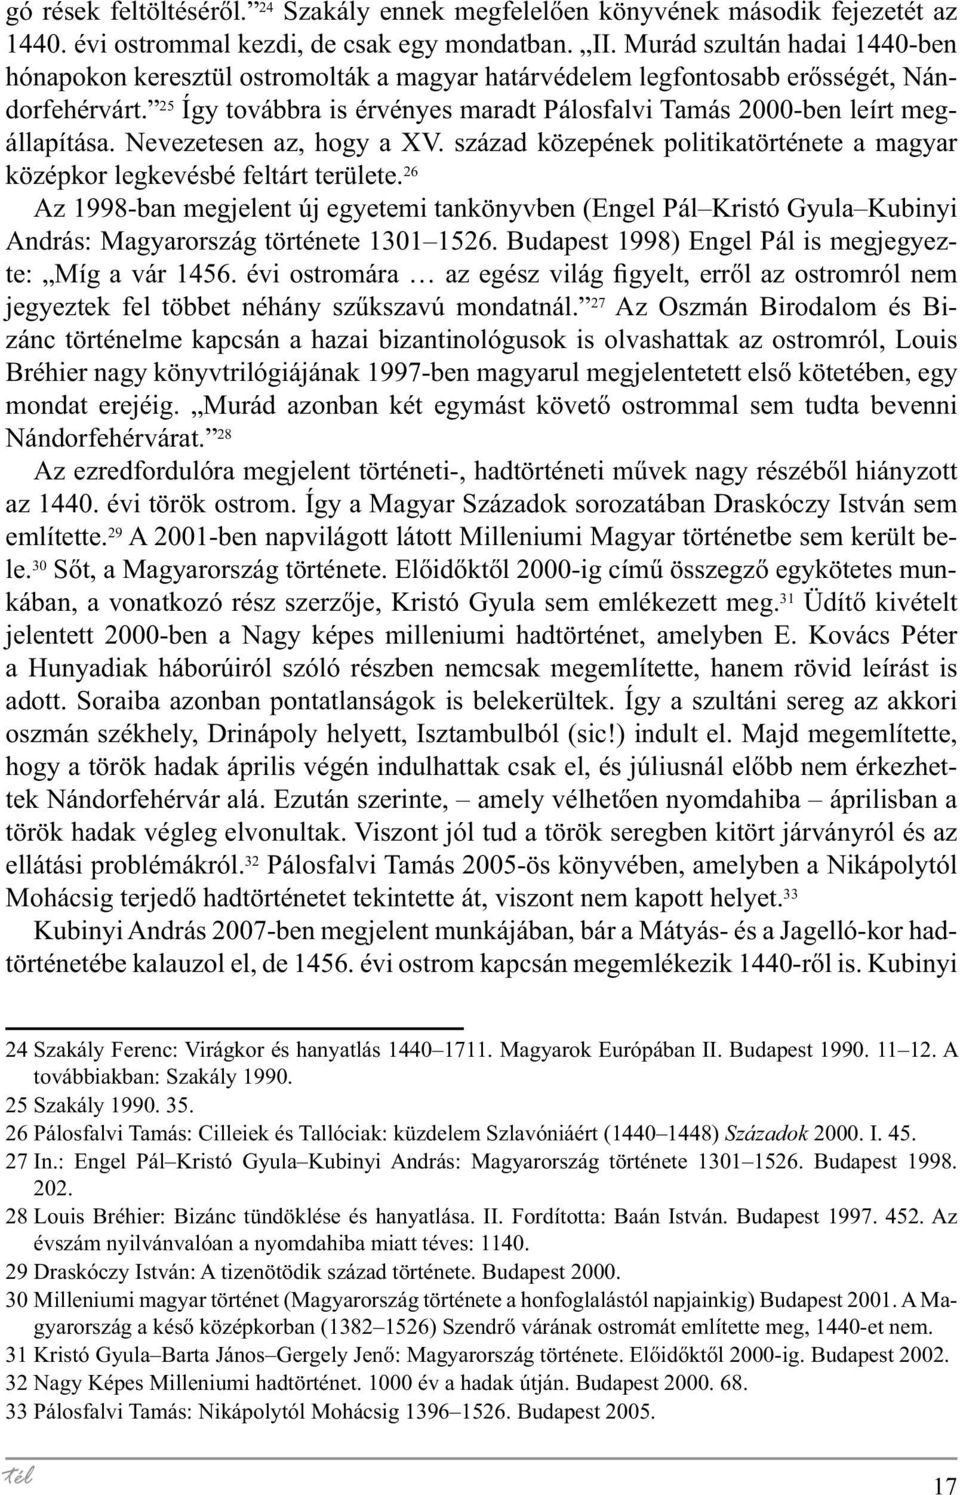 25 Így továbbra is érvényes maradt Pálosfalvi Tamás 2000-ben leírt megállapítása. Nevezetesen az, hogy a XV. század közepének politikatörténete a magyar középkor legkevésbé feltárt területe.